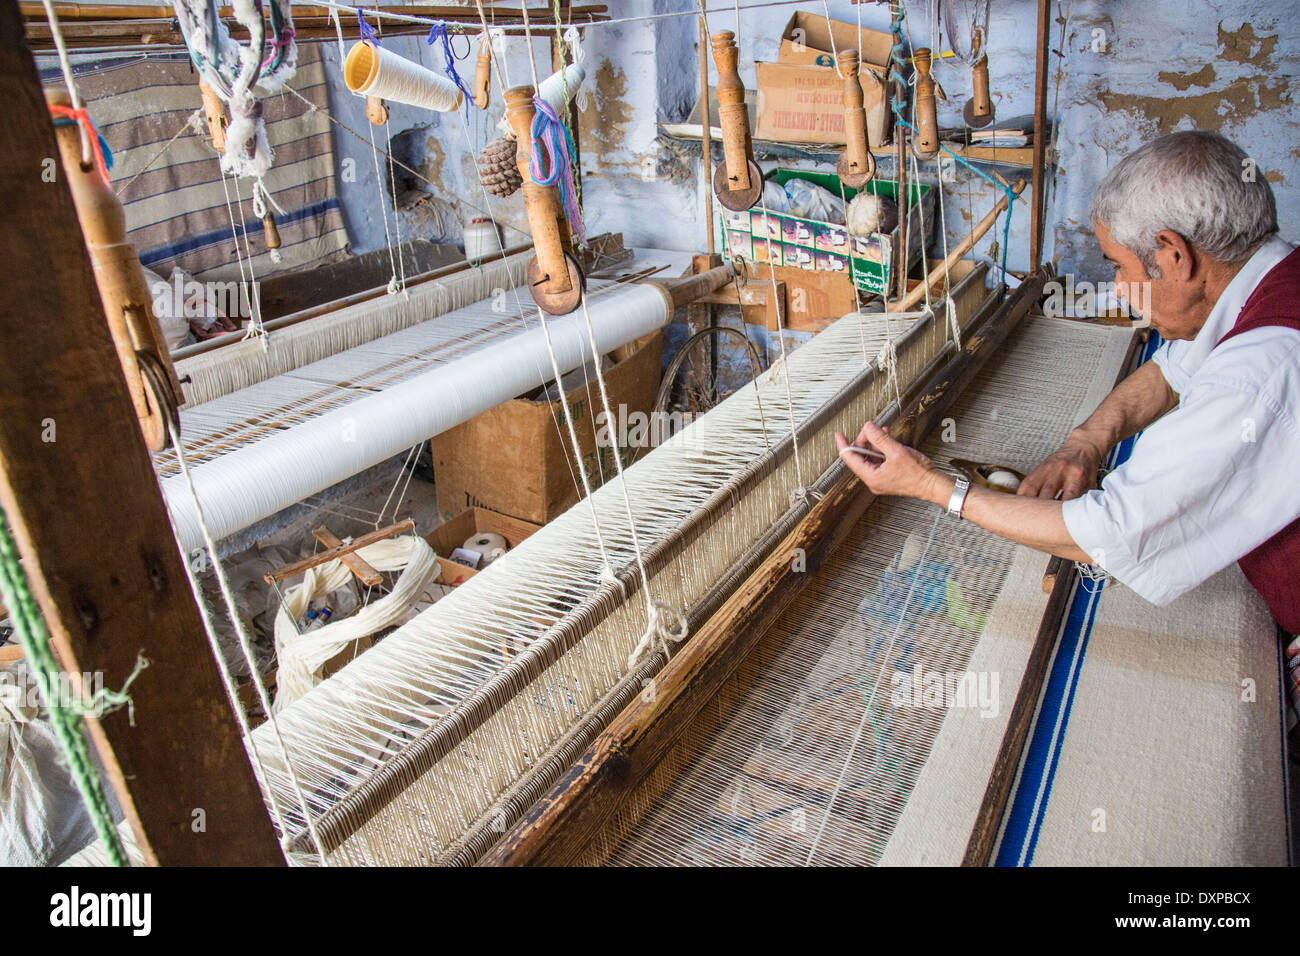 Making textiles in Kairouan, Tunisia Stock Photo